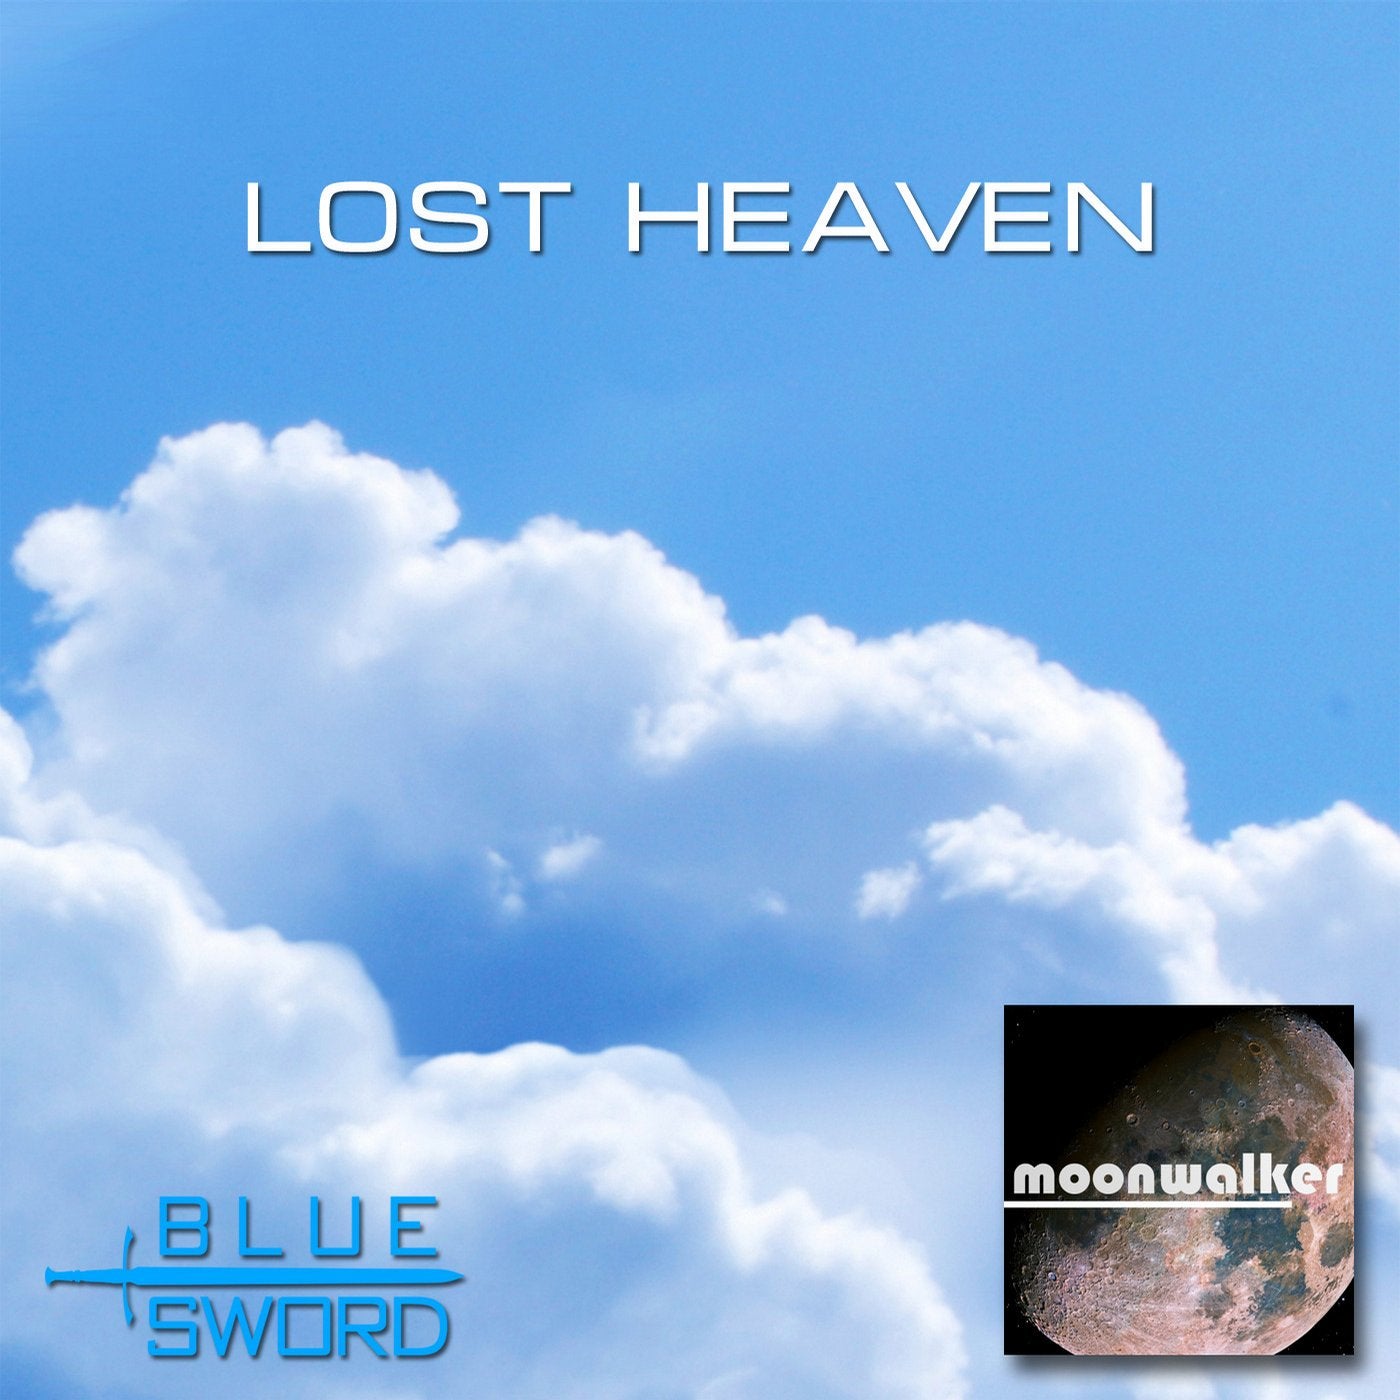 Lost Heaven